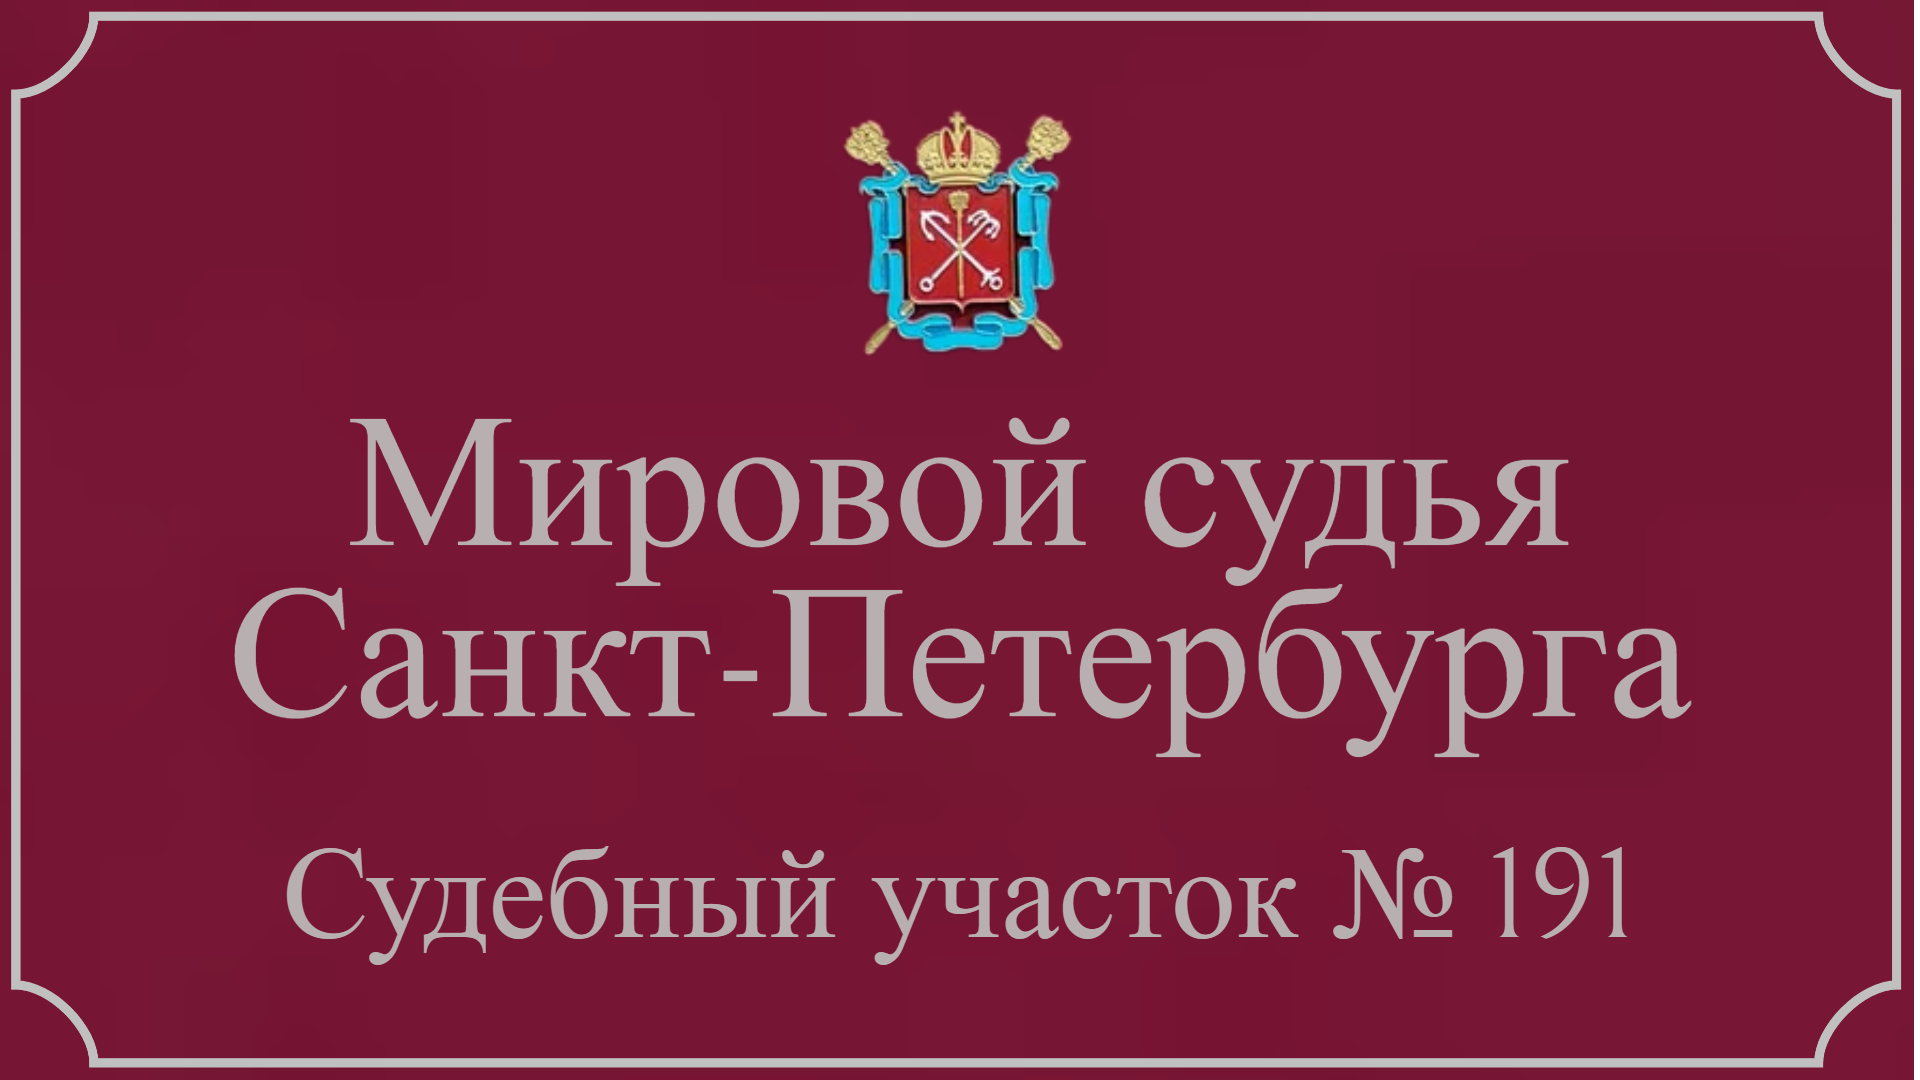 Информация по 191 судебному участку в Санкт-Петербурге.